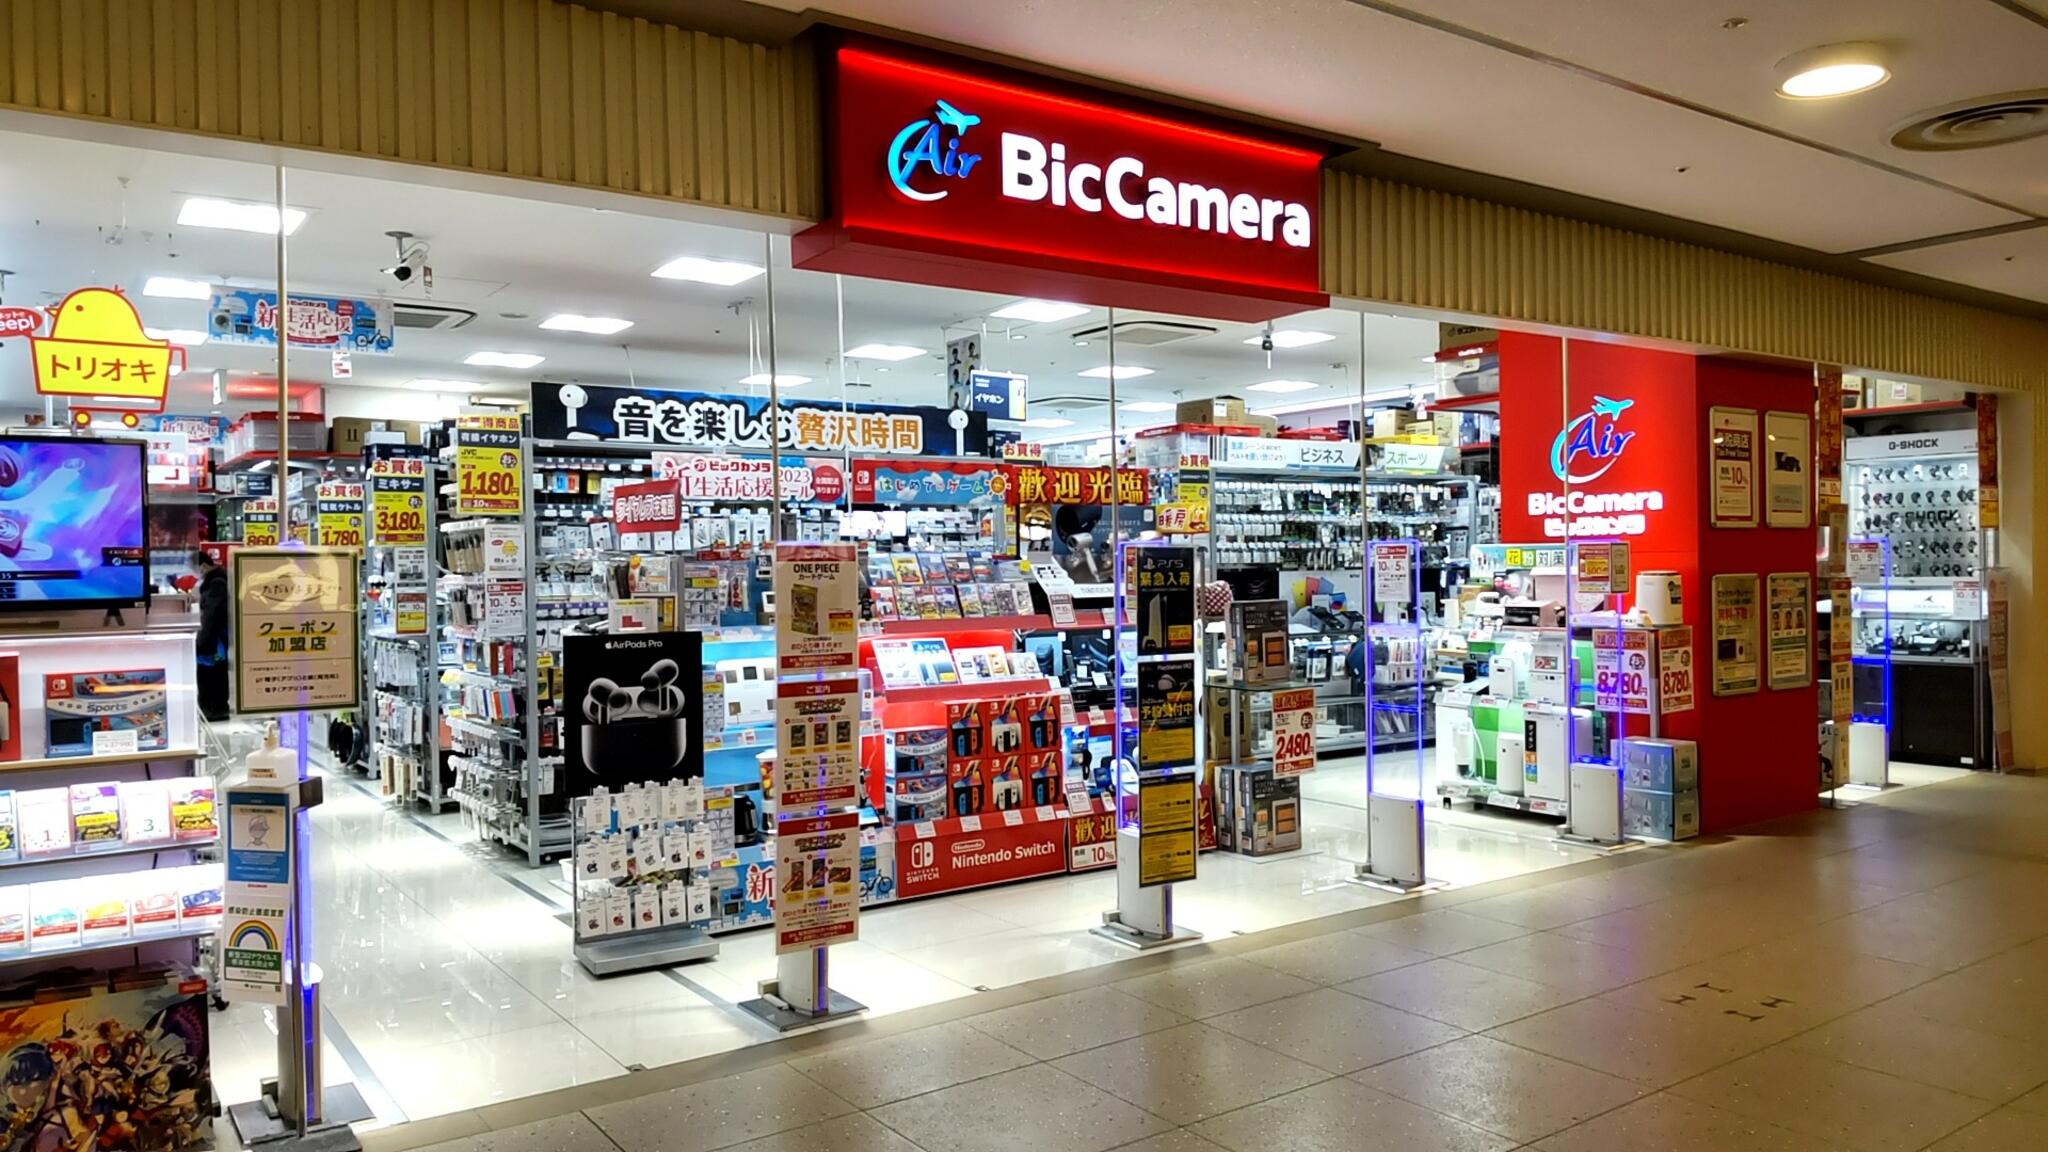 ビックカメラ Air BicCamera 東京スカイツリータウン・ソラマチ店の代表写真3